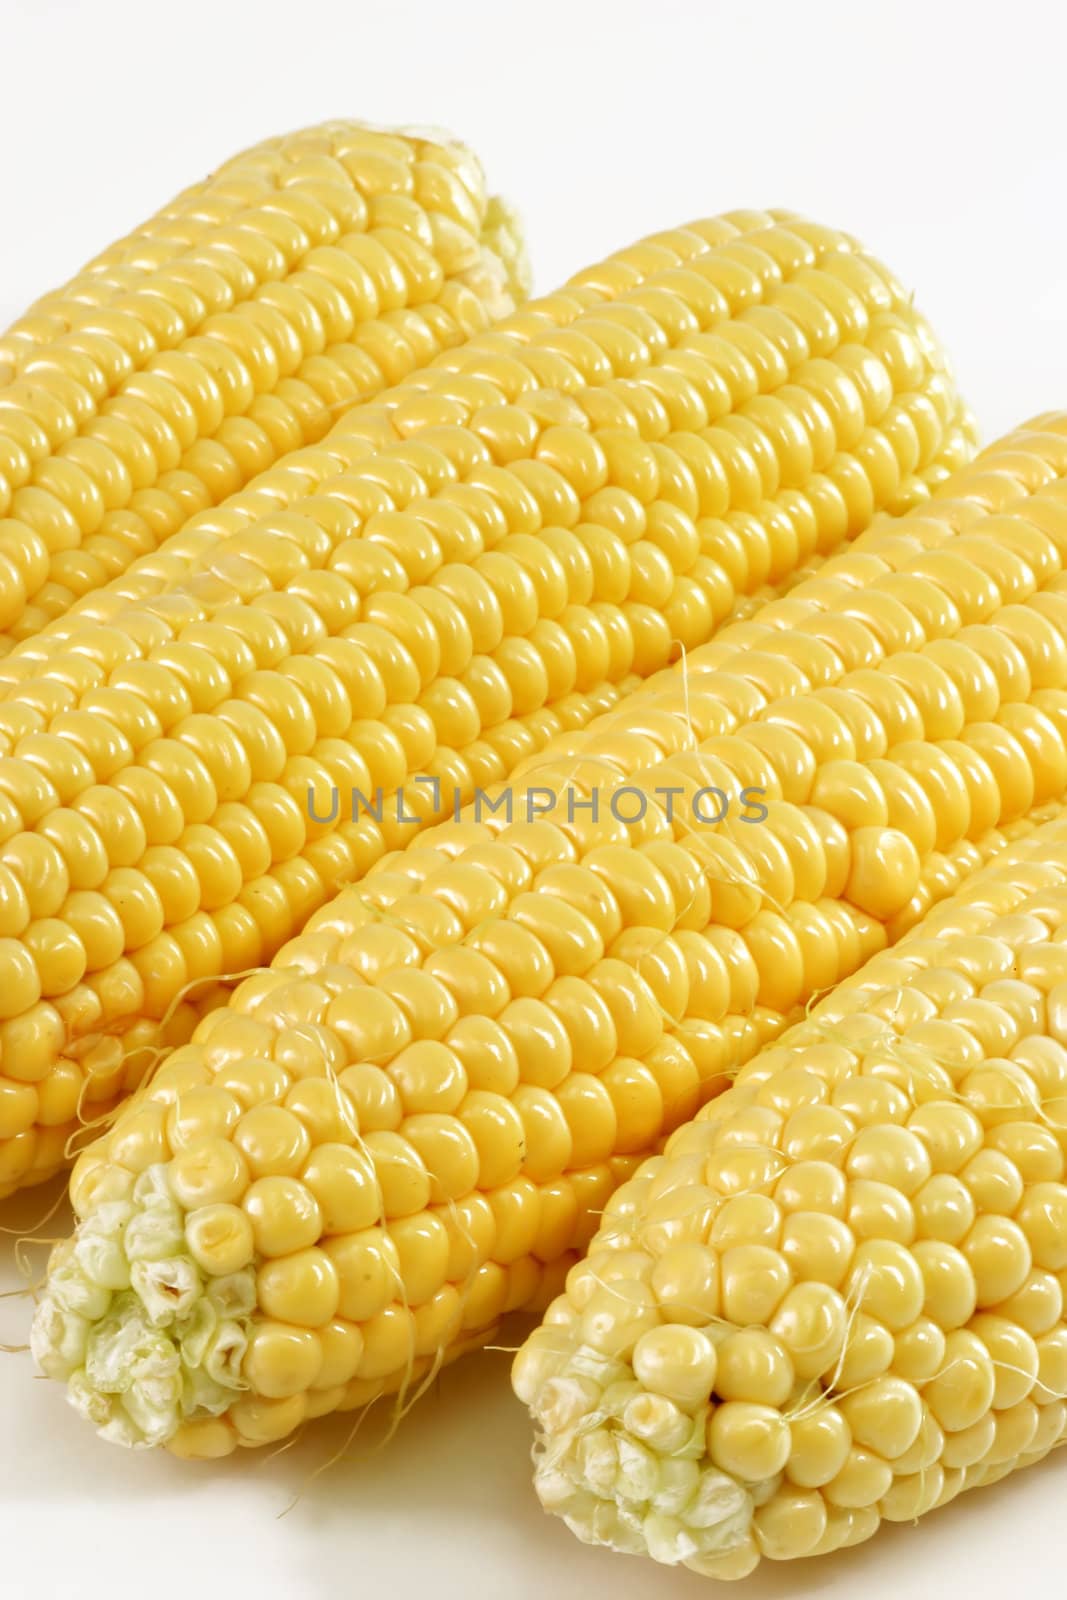 Corn crop on bright background